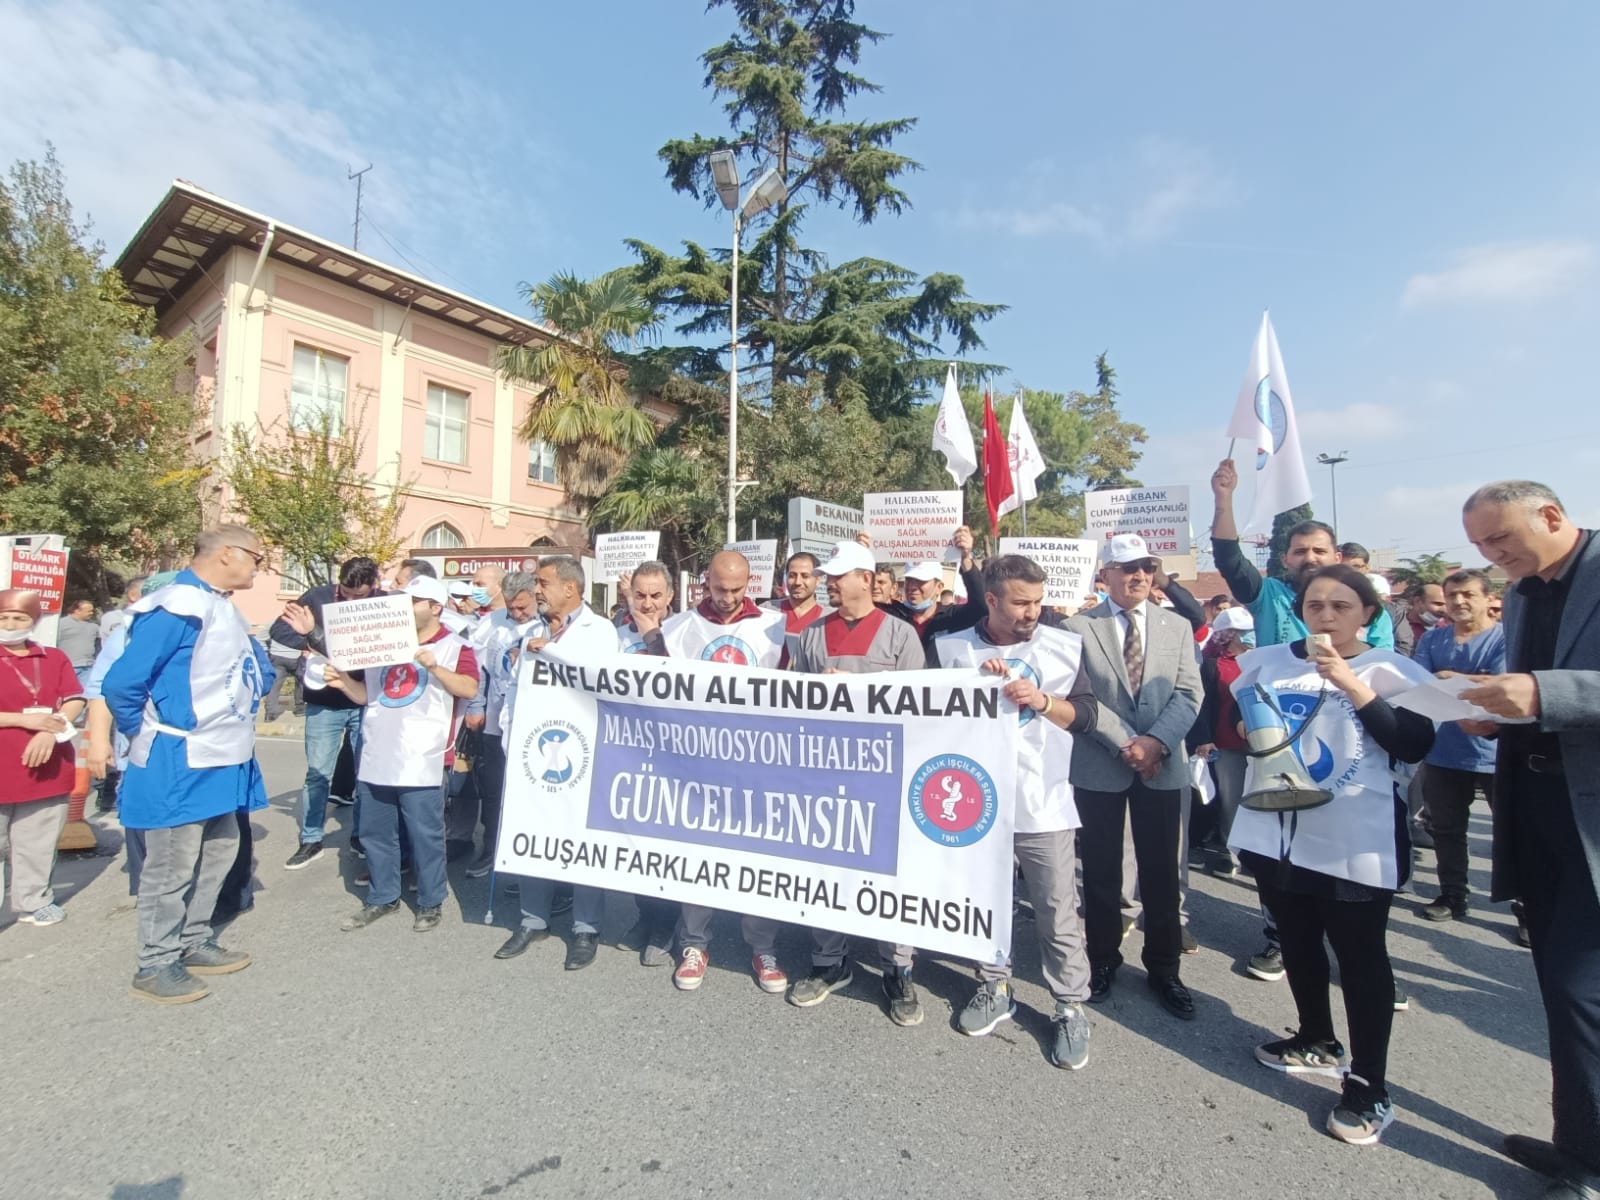 İstanbul Aksaray Şubemiz ve Sağlık-İş İstanbul 2 No’lu Şube: Enflasyon Altında Kalan Maaş Promosyon İhalesi Güncellensin